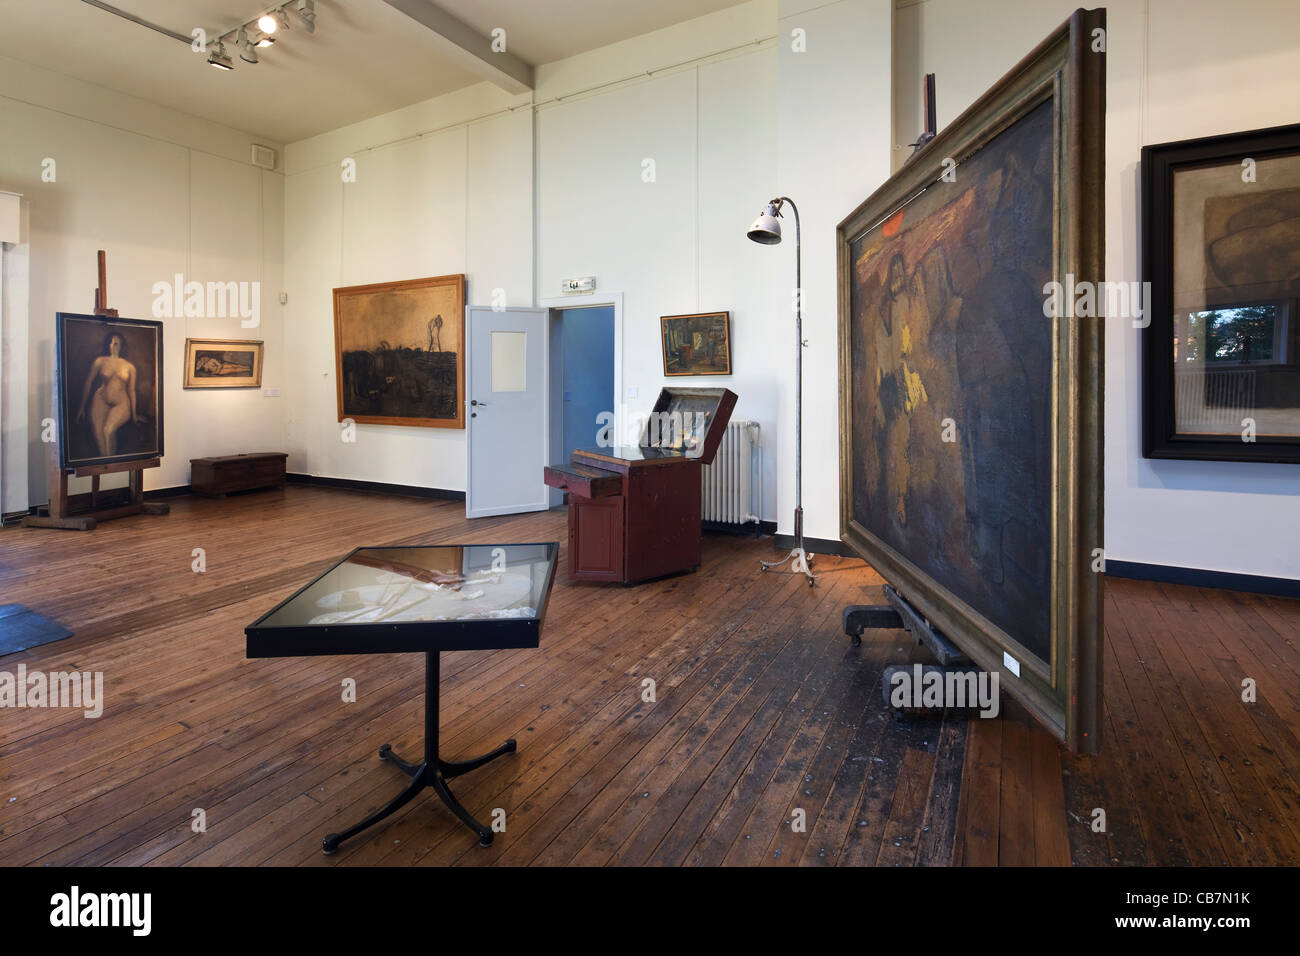 Innenraum des Museums konstante Permeke, belgischer Maler und Bildhauer und Leitfigur des flämischen Expressionismus, Ostende, Belgien Stockfoto